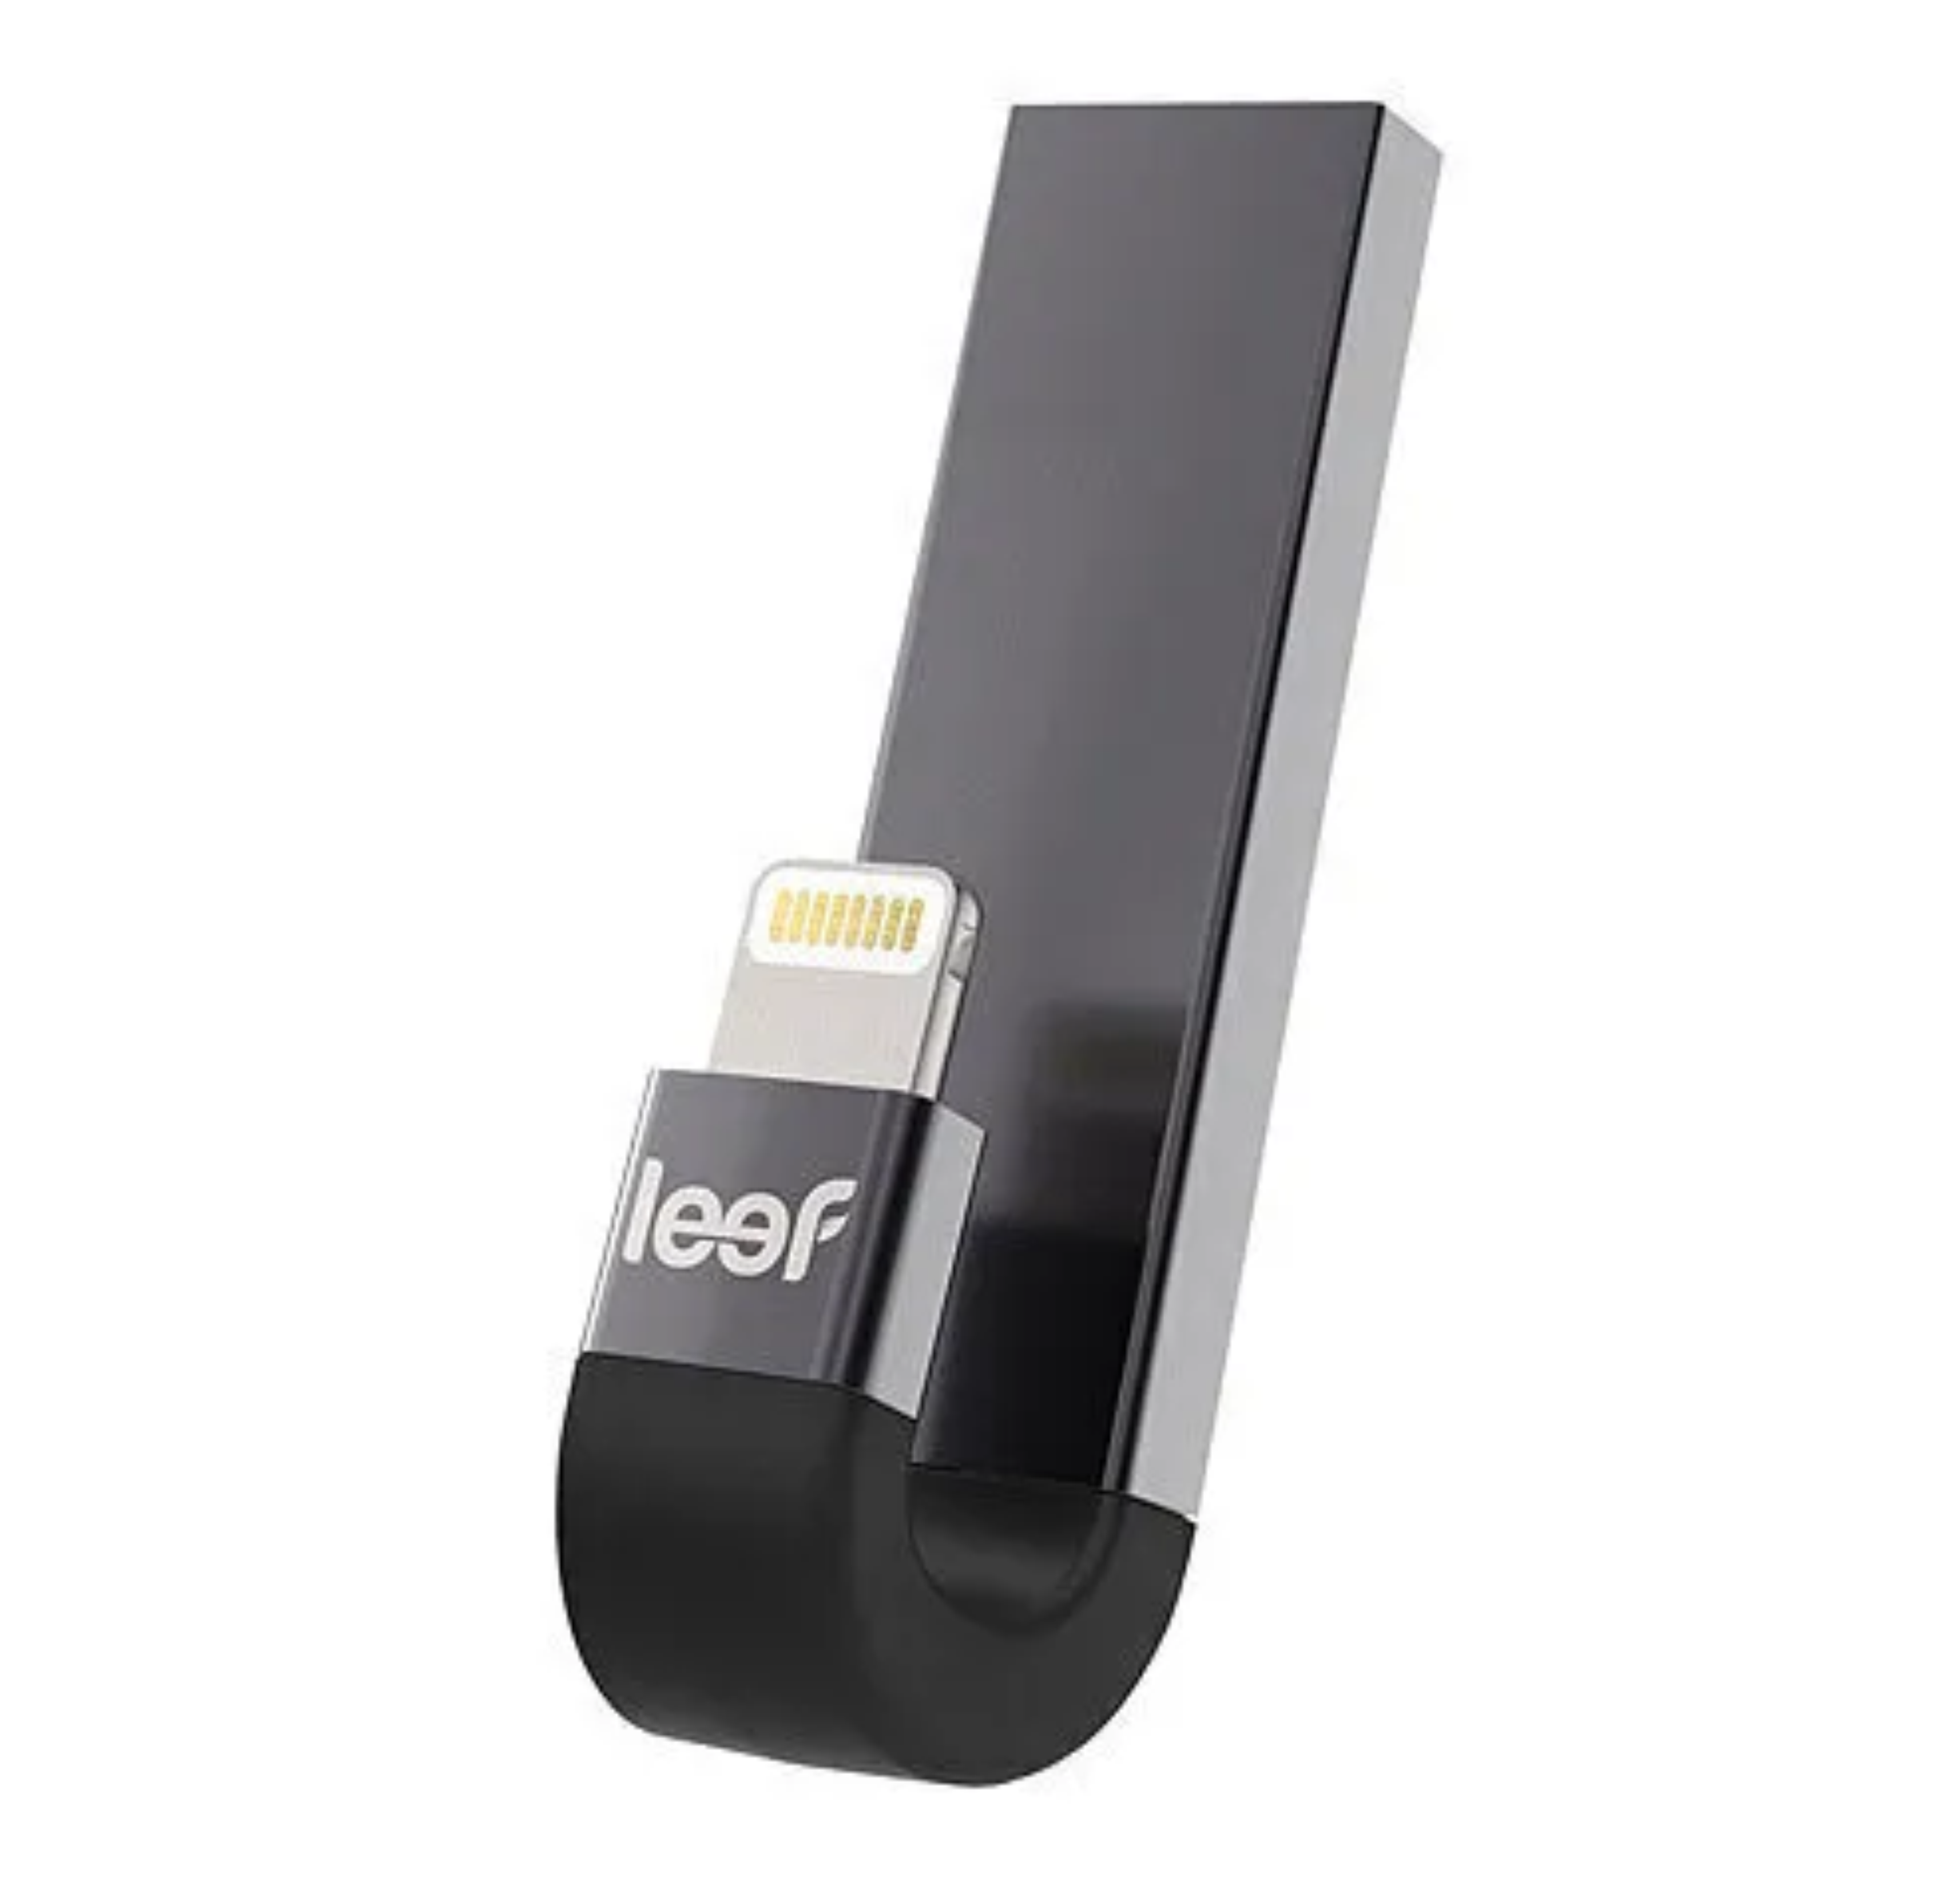 Флешка Leef Bridge 64 ГБ. USB флешка Leef IBRIDGE 3 64gb. Флешка Leef IBRIDGE 128 ГБ. Leef Bridge 3 128gb. Дополнительная память для телефона